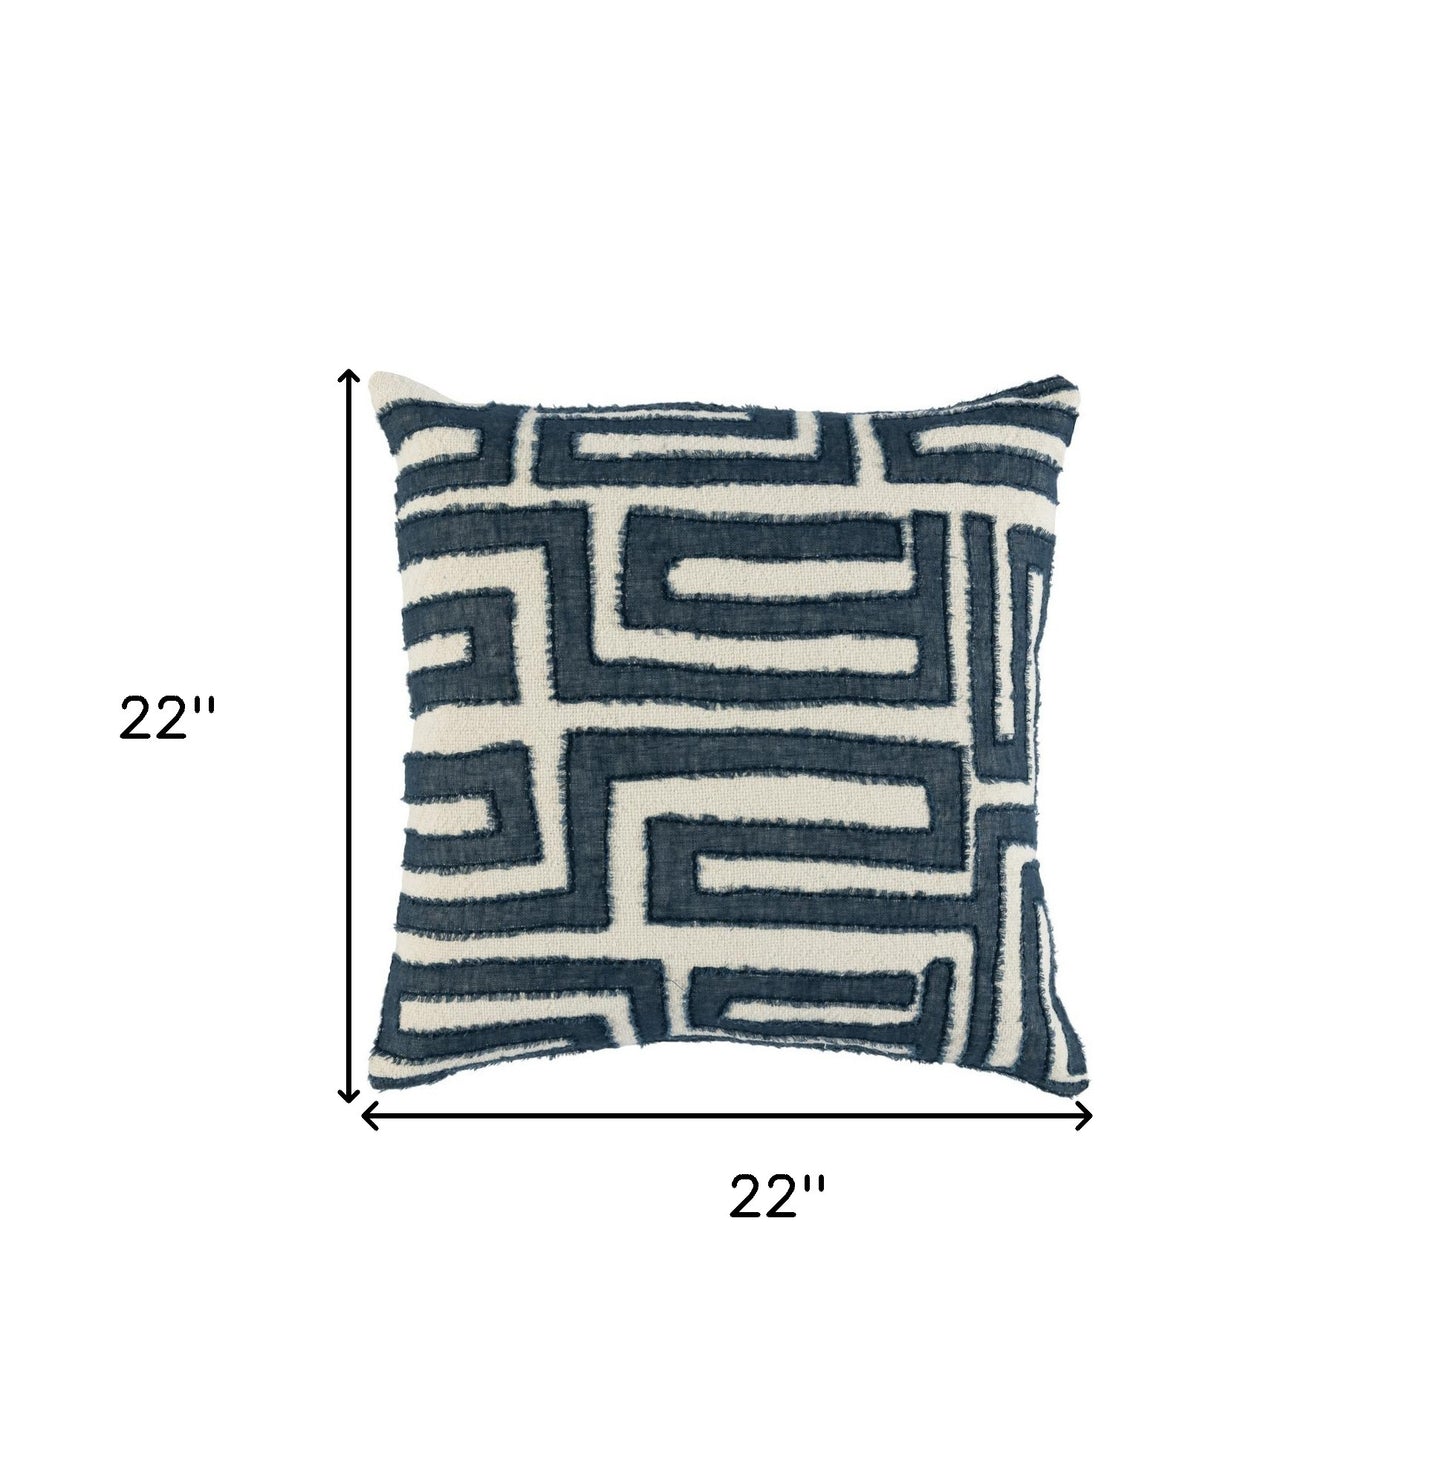 22" X 22" Blue Linen Geometric Zippered Pillow